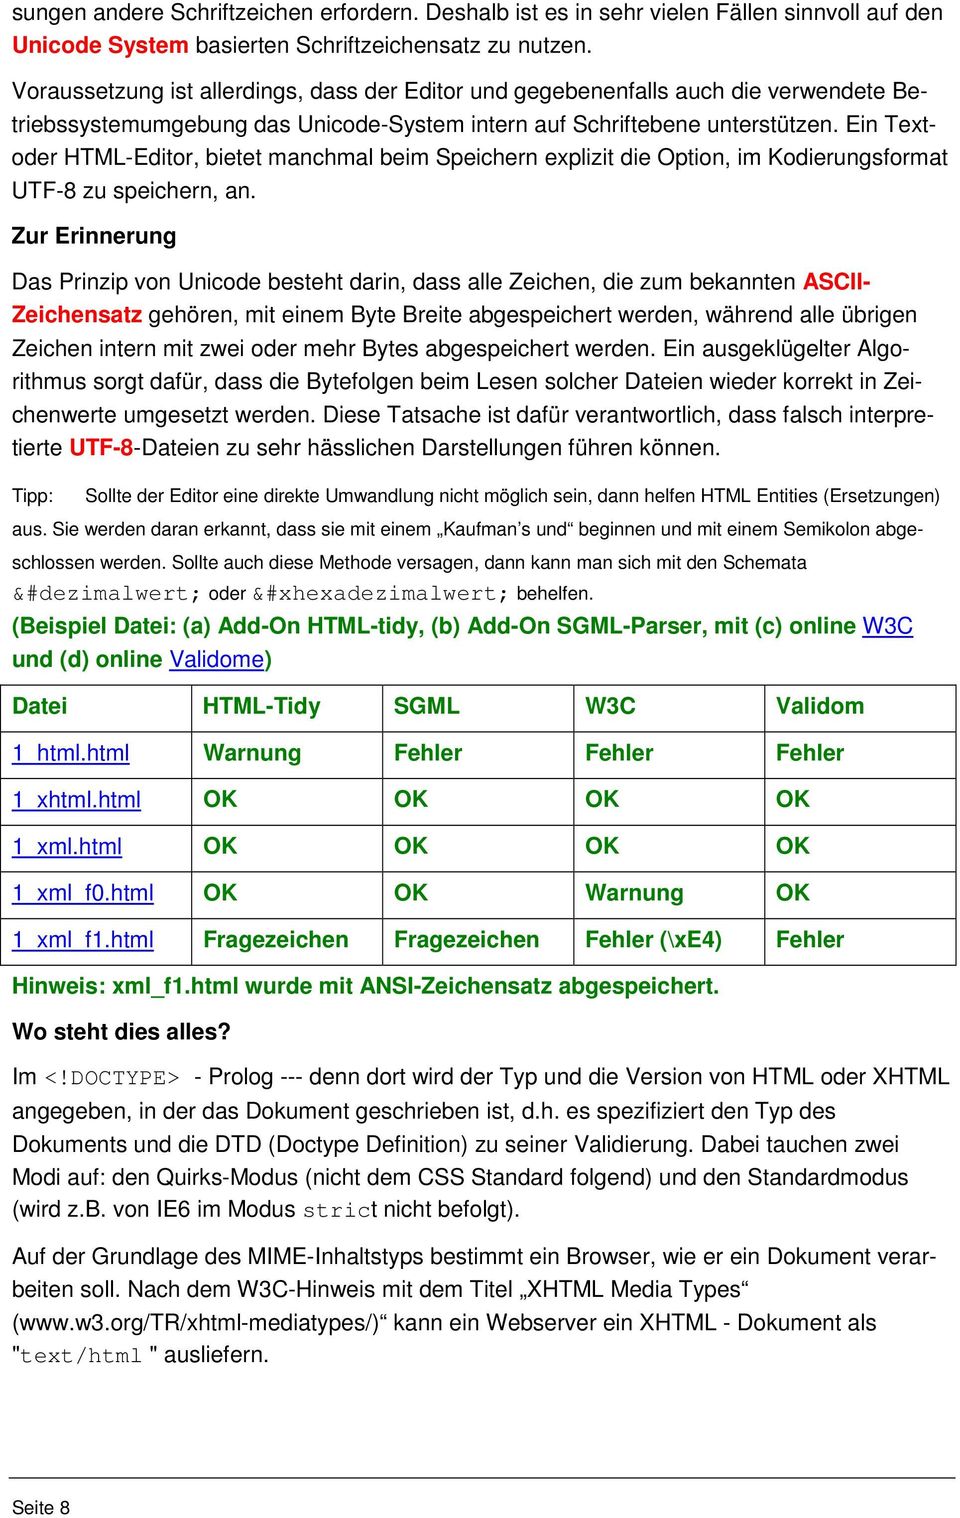 Ein Text- oder HTML-Editor, bietet manchmal beim Speichern explizit die Option, im Kodierungsformat UTF-8 zu speichern, an.